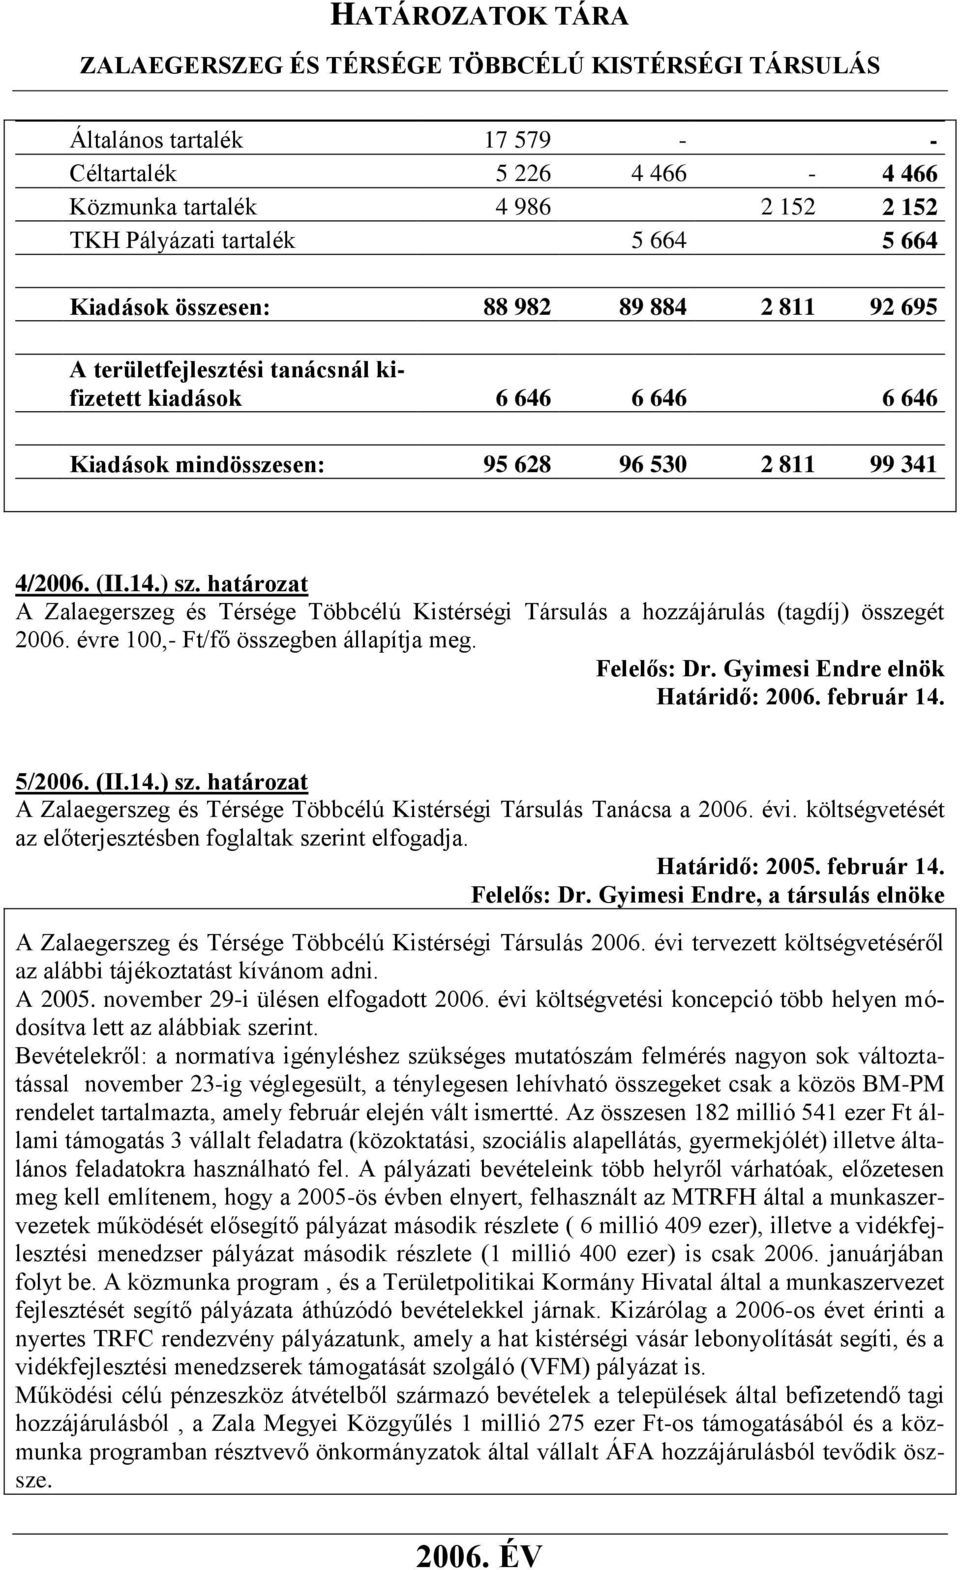 határozat A Zalaegerszeg és Térsége Többcélú Kistérségi Társulás a hozzájárulás (tagdíj) összegét 2006. évre 100,- Ft/fő összegben állapítja meg. Határidő: 2006. február 14. 5/2006. (II.14.) sz.